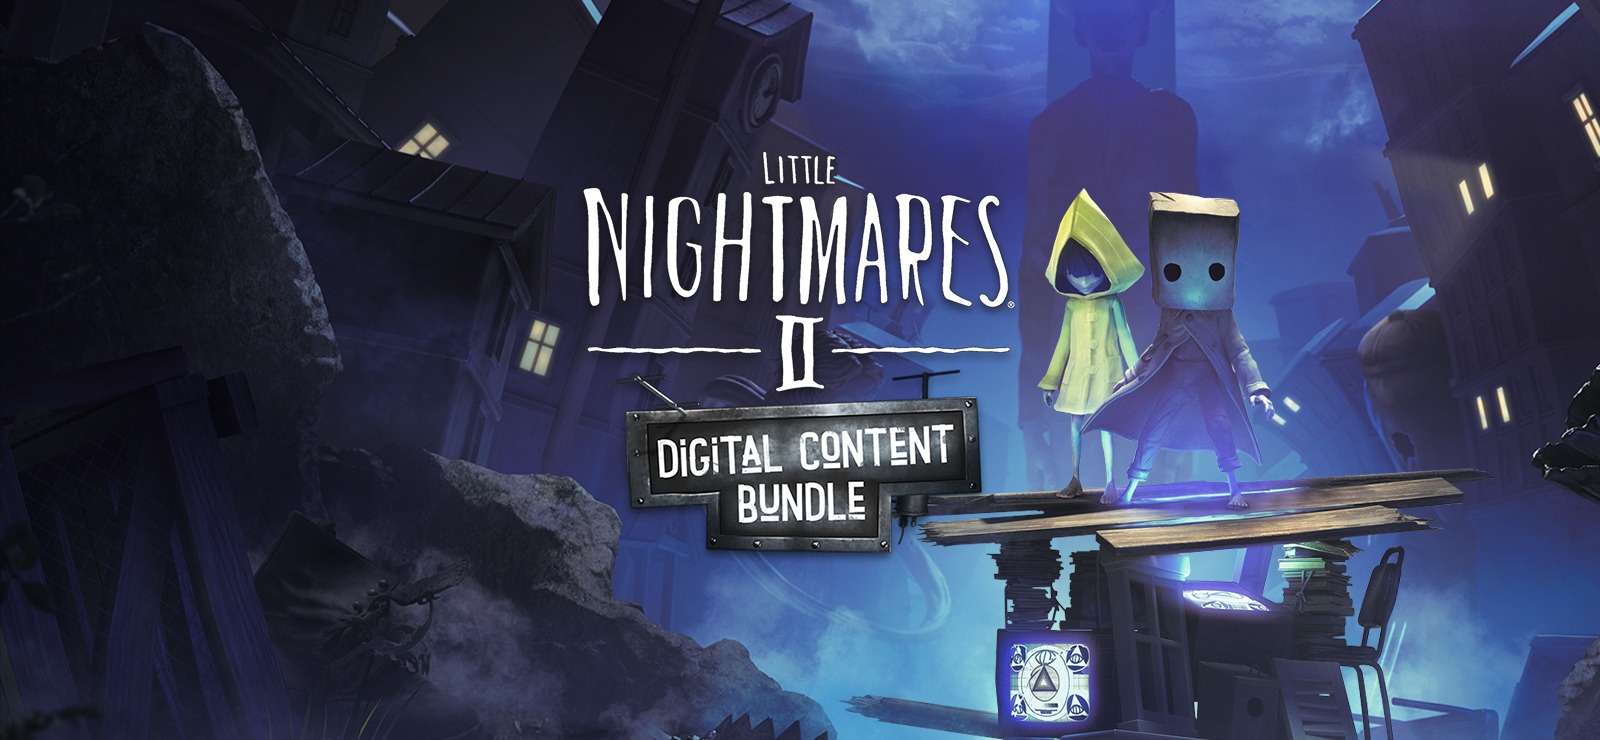 Little Nightmares II - Twitch